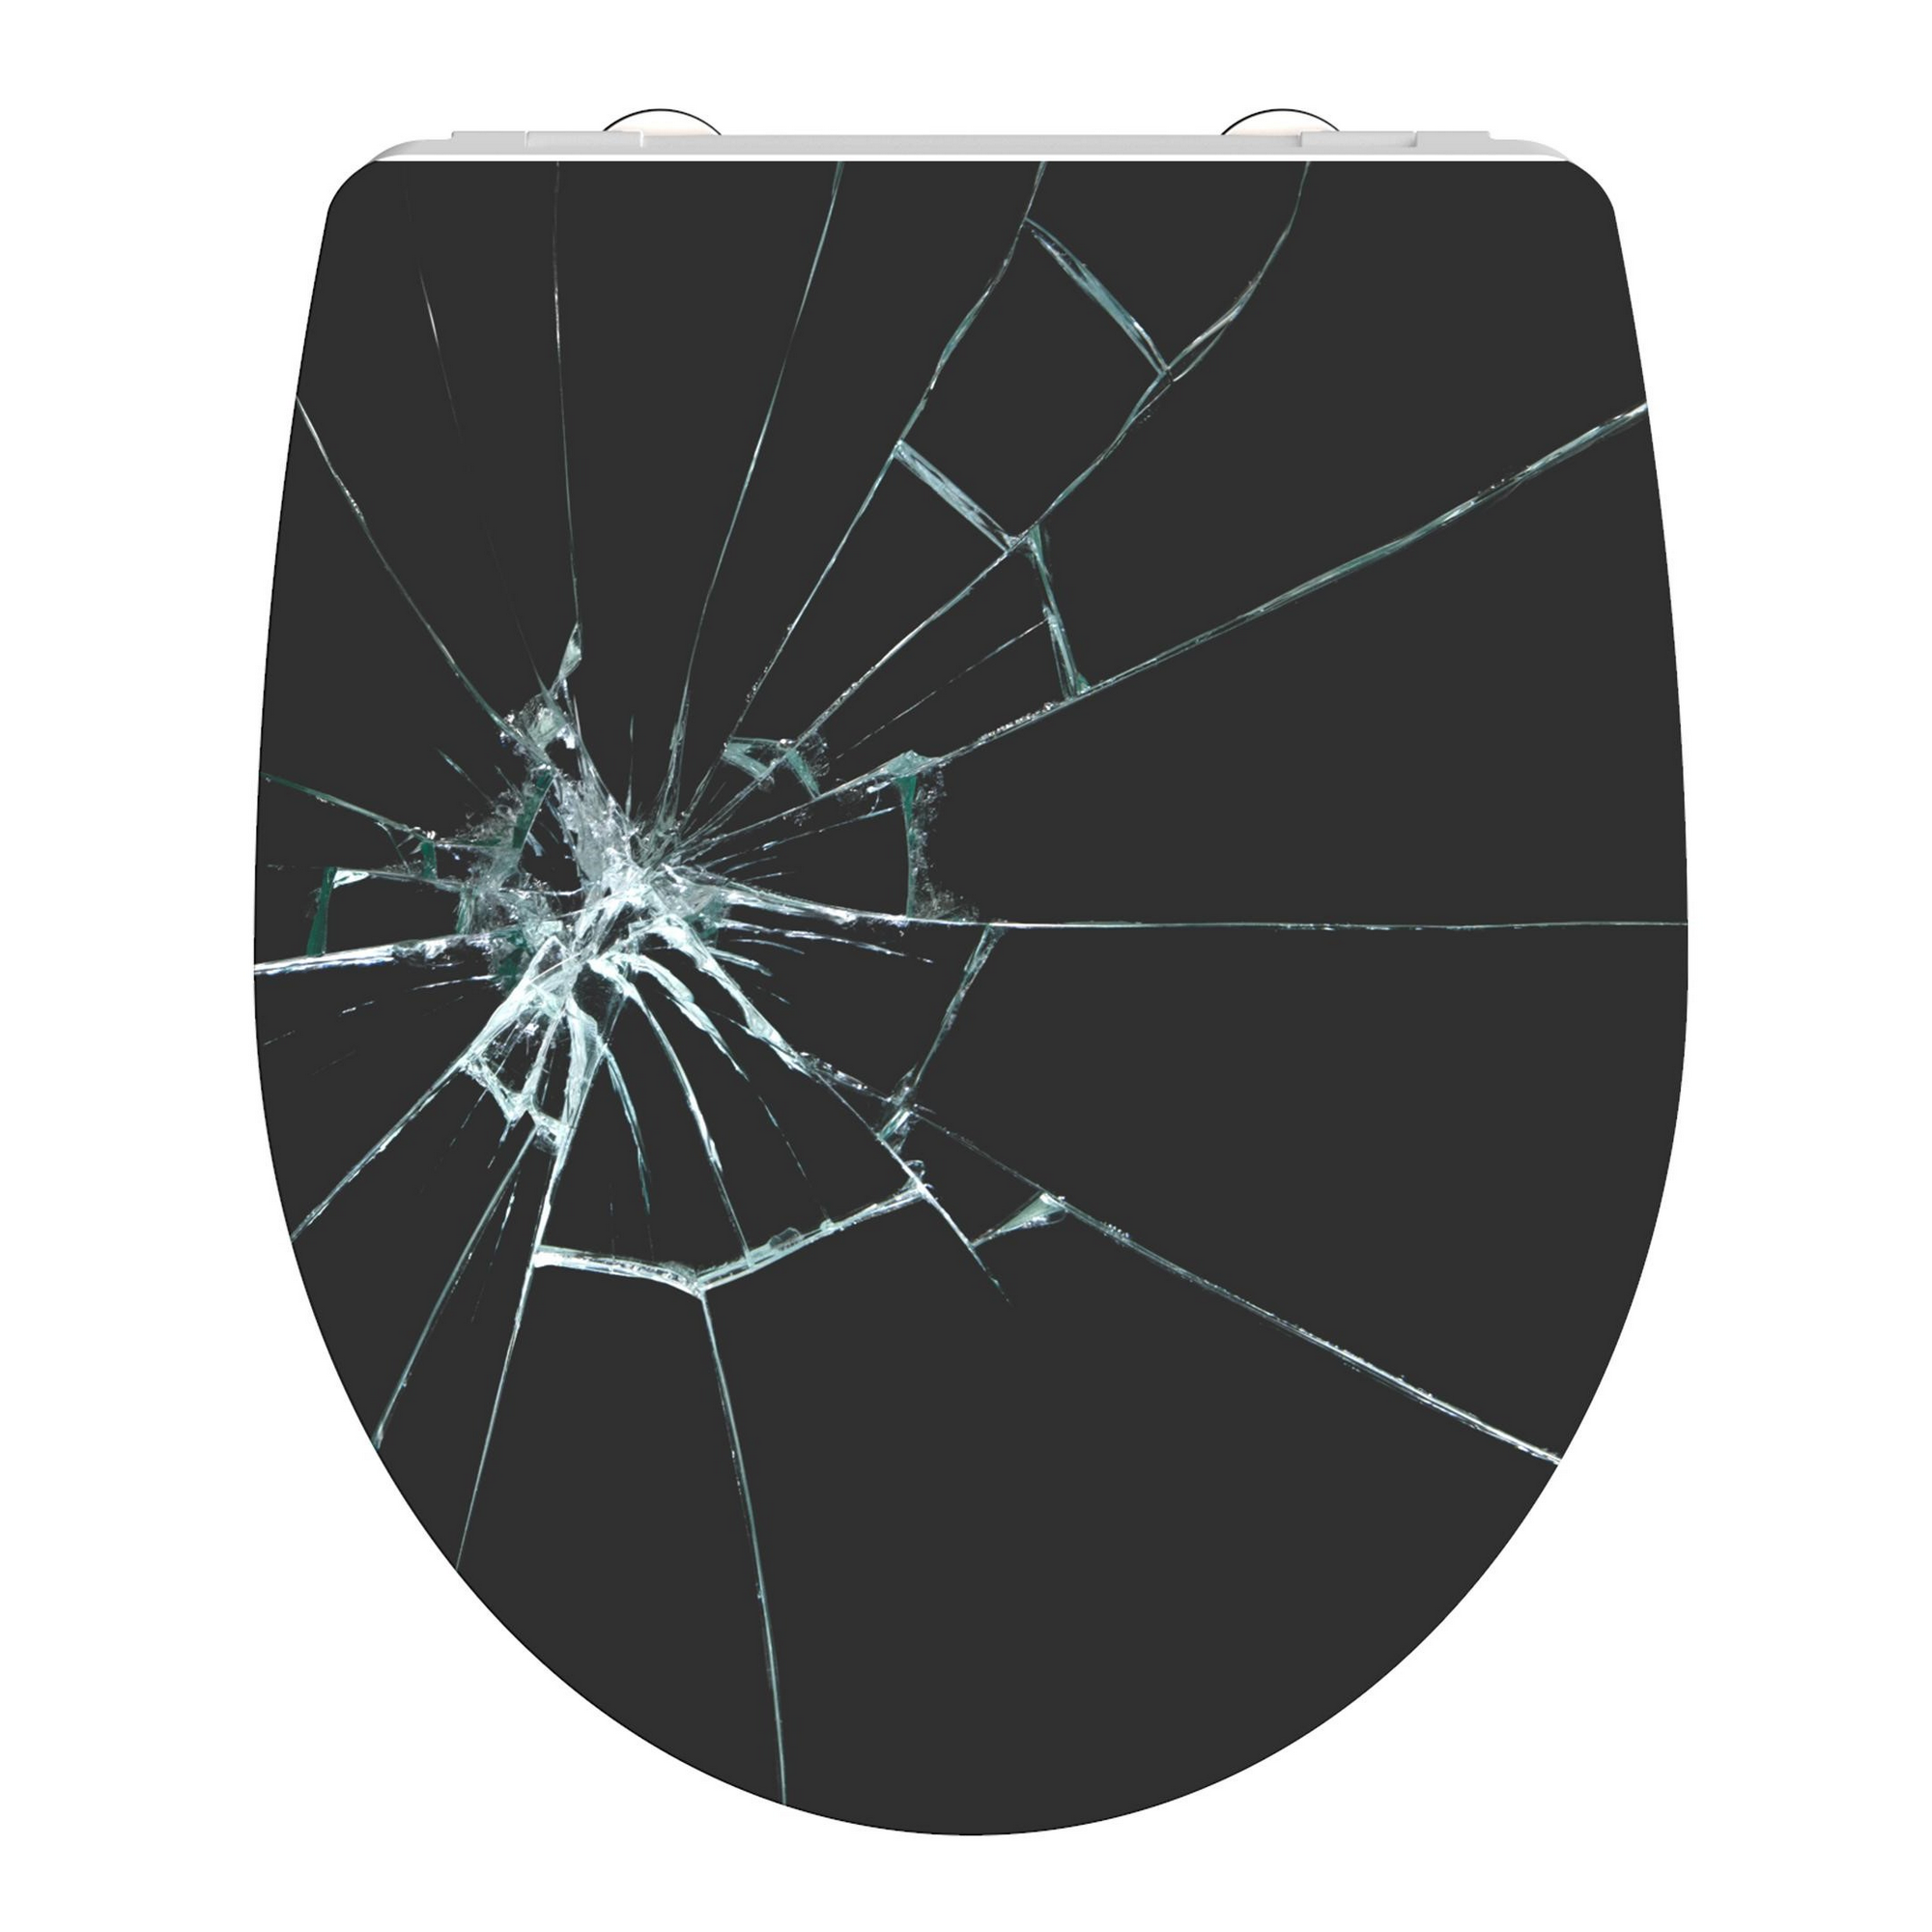 Image of Schütte WC-Sitz 'Broken Glass HG' mit Absenkautomatik schwarz/weiß 37 5 x 45 cm